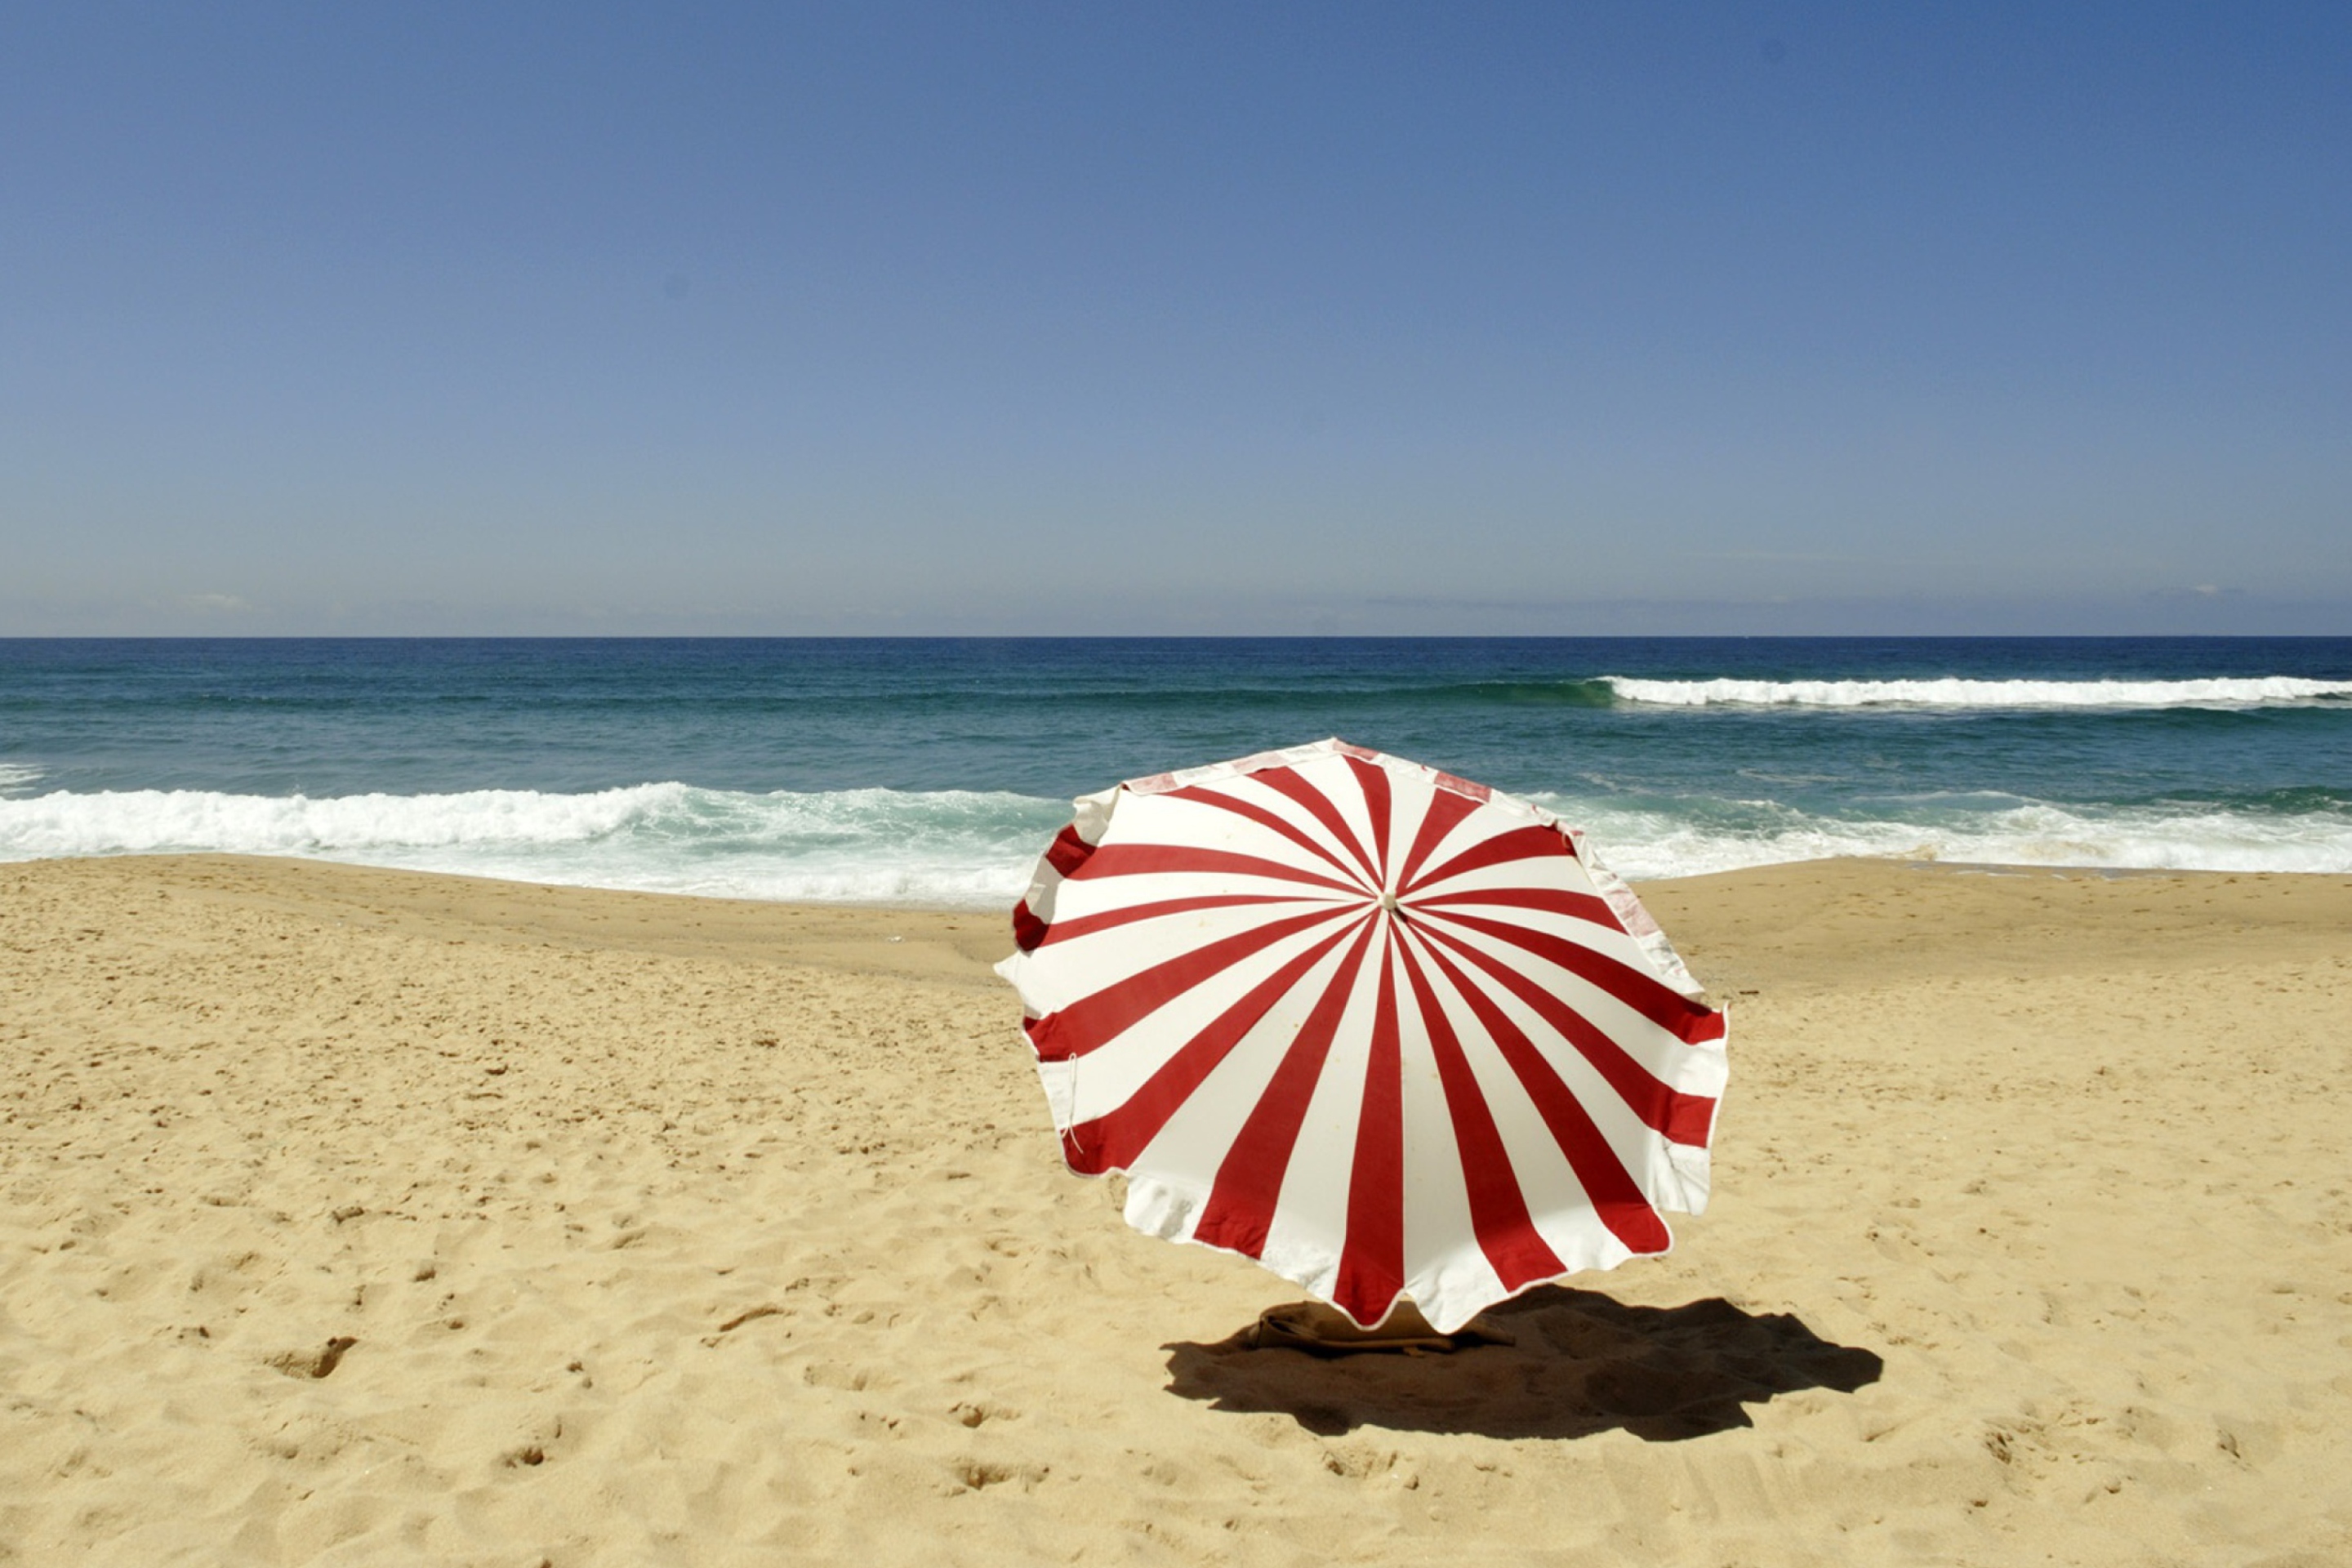 Обои Umbrella On The Beach 2880x1920